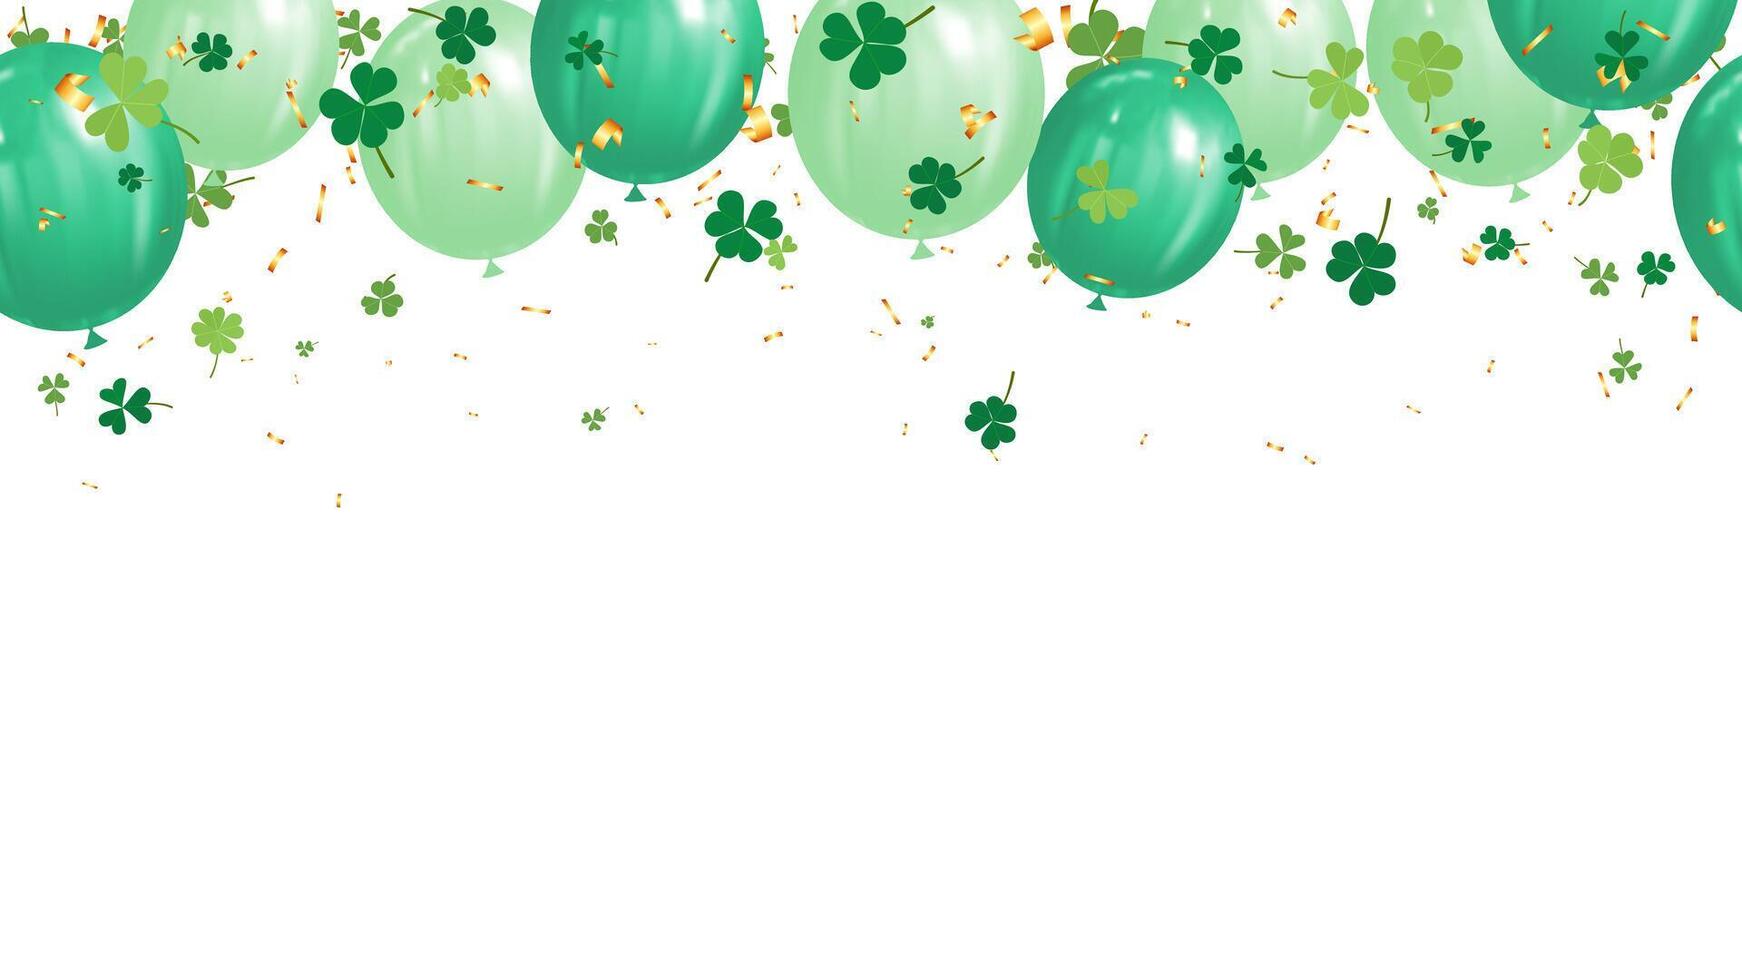 uteslutande baner grön skinande ballonger, guld konfetti och klöver löv vektor illustration för Semester fest